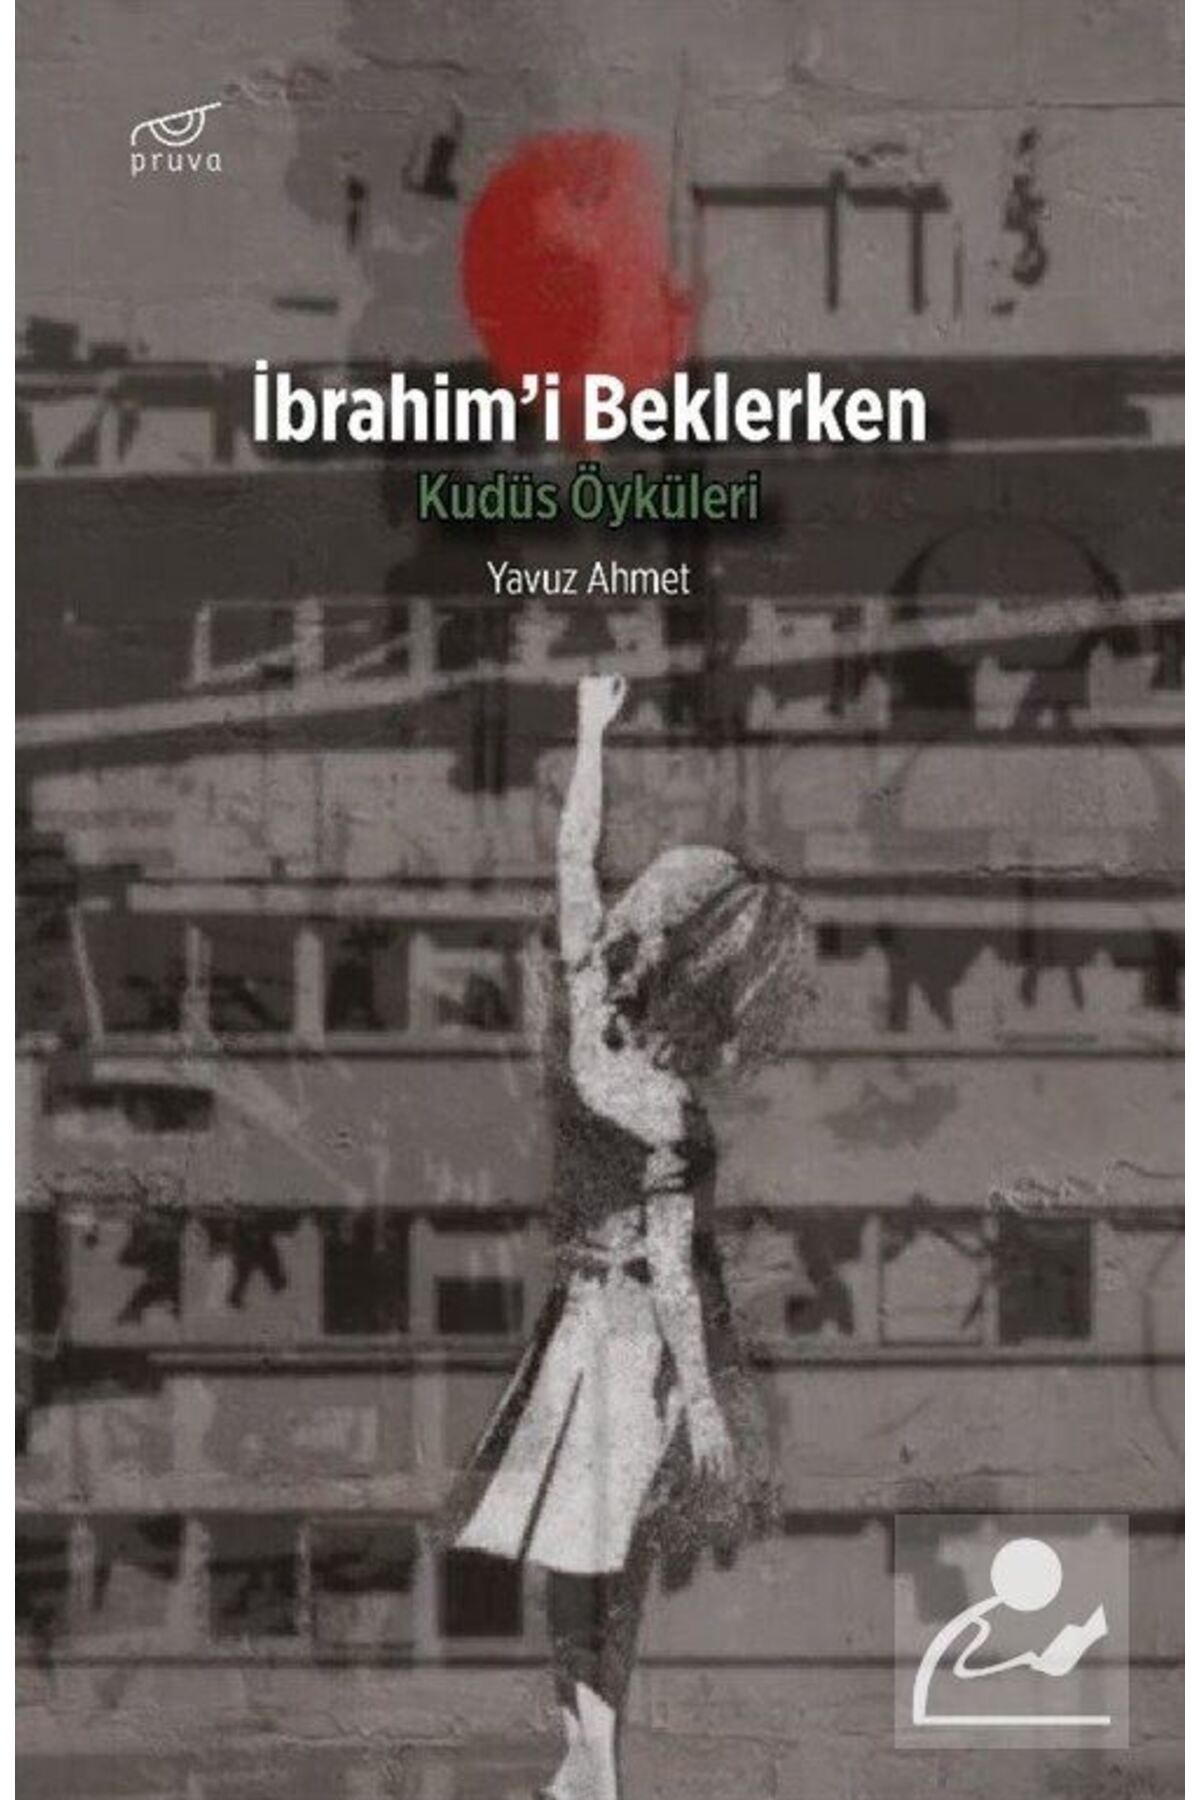 Pruva Ibrahim'i Beklerken & Kudüs Öyküleri